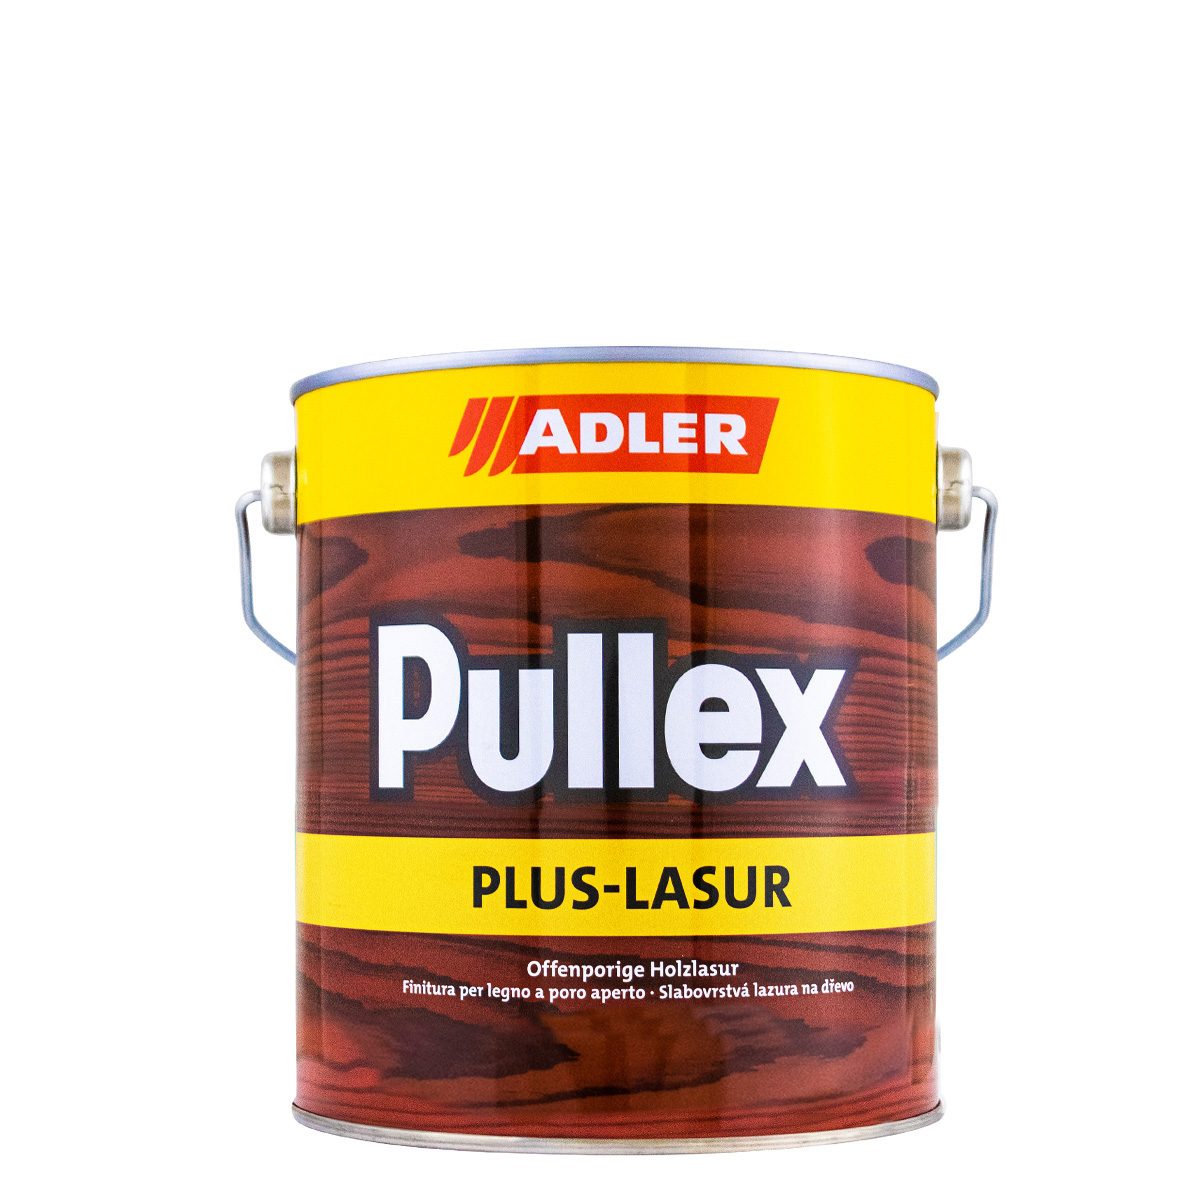 adler_pullex_plus-lasur_2,5L_gross